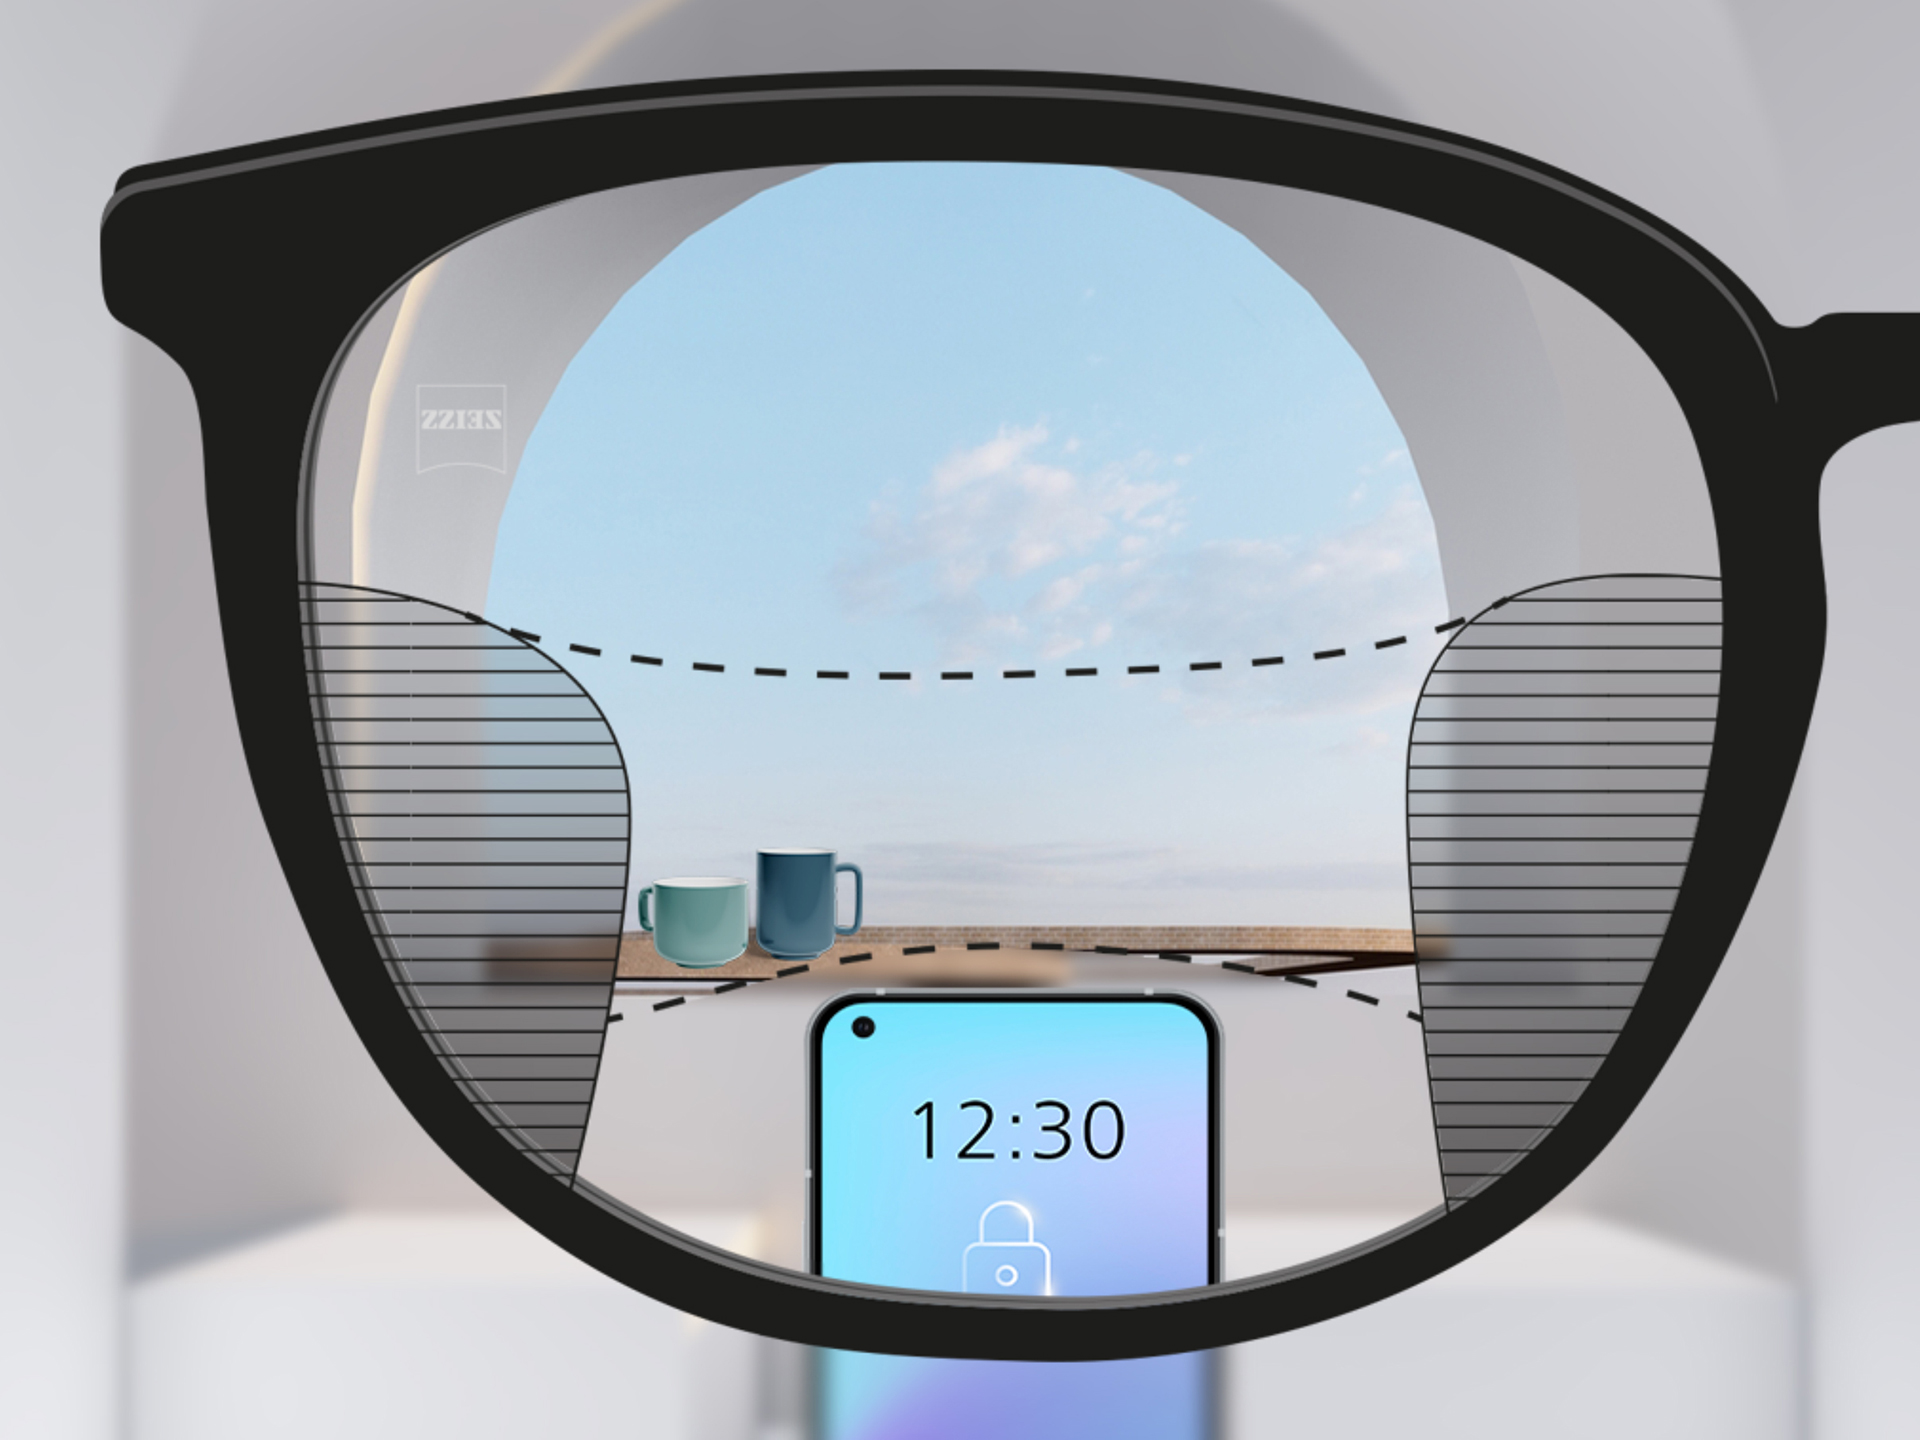 使用 ZEISS 智锐渐进镜片获得的视角图像：镜片左右两边的模糊区域较小，可实现镜片上大面积的清晰视野区域。